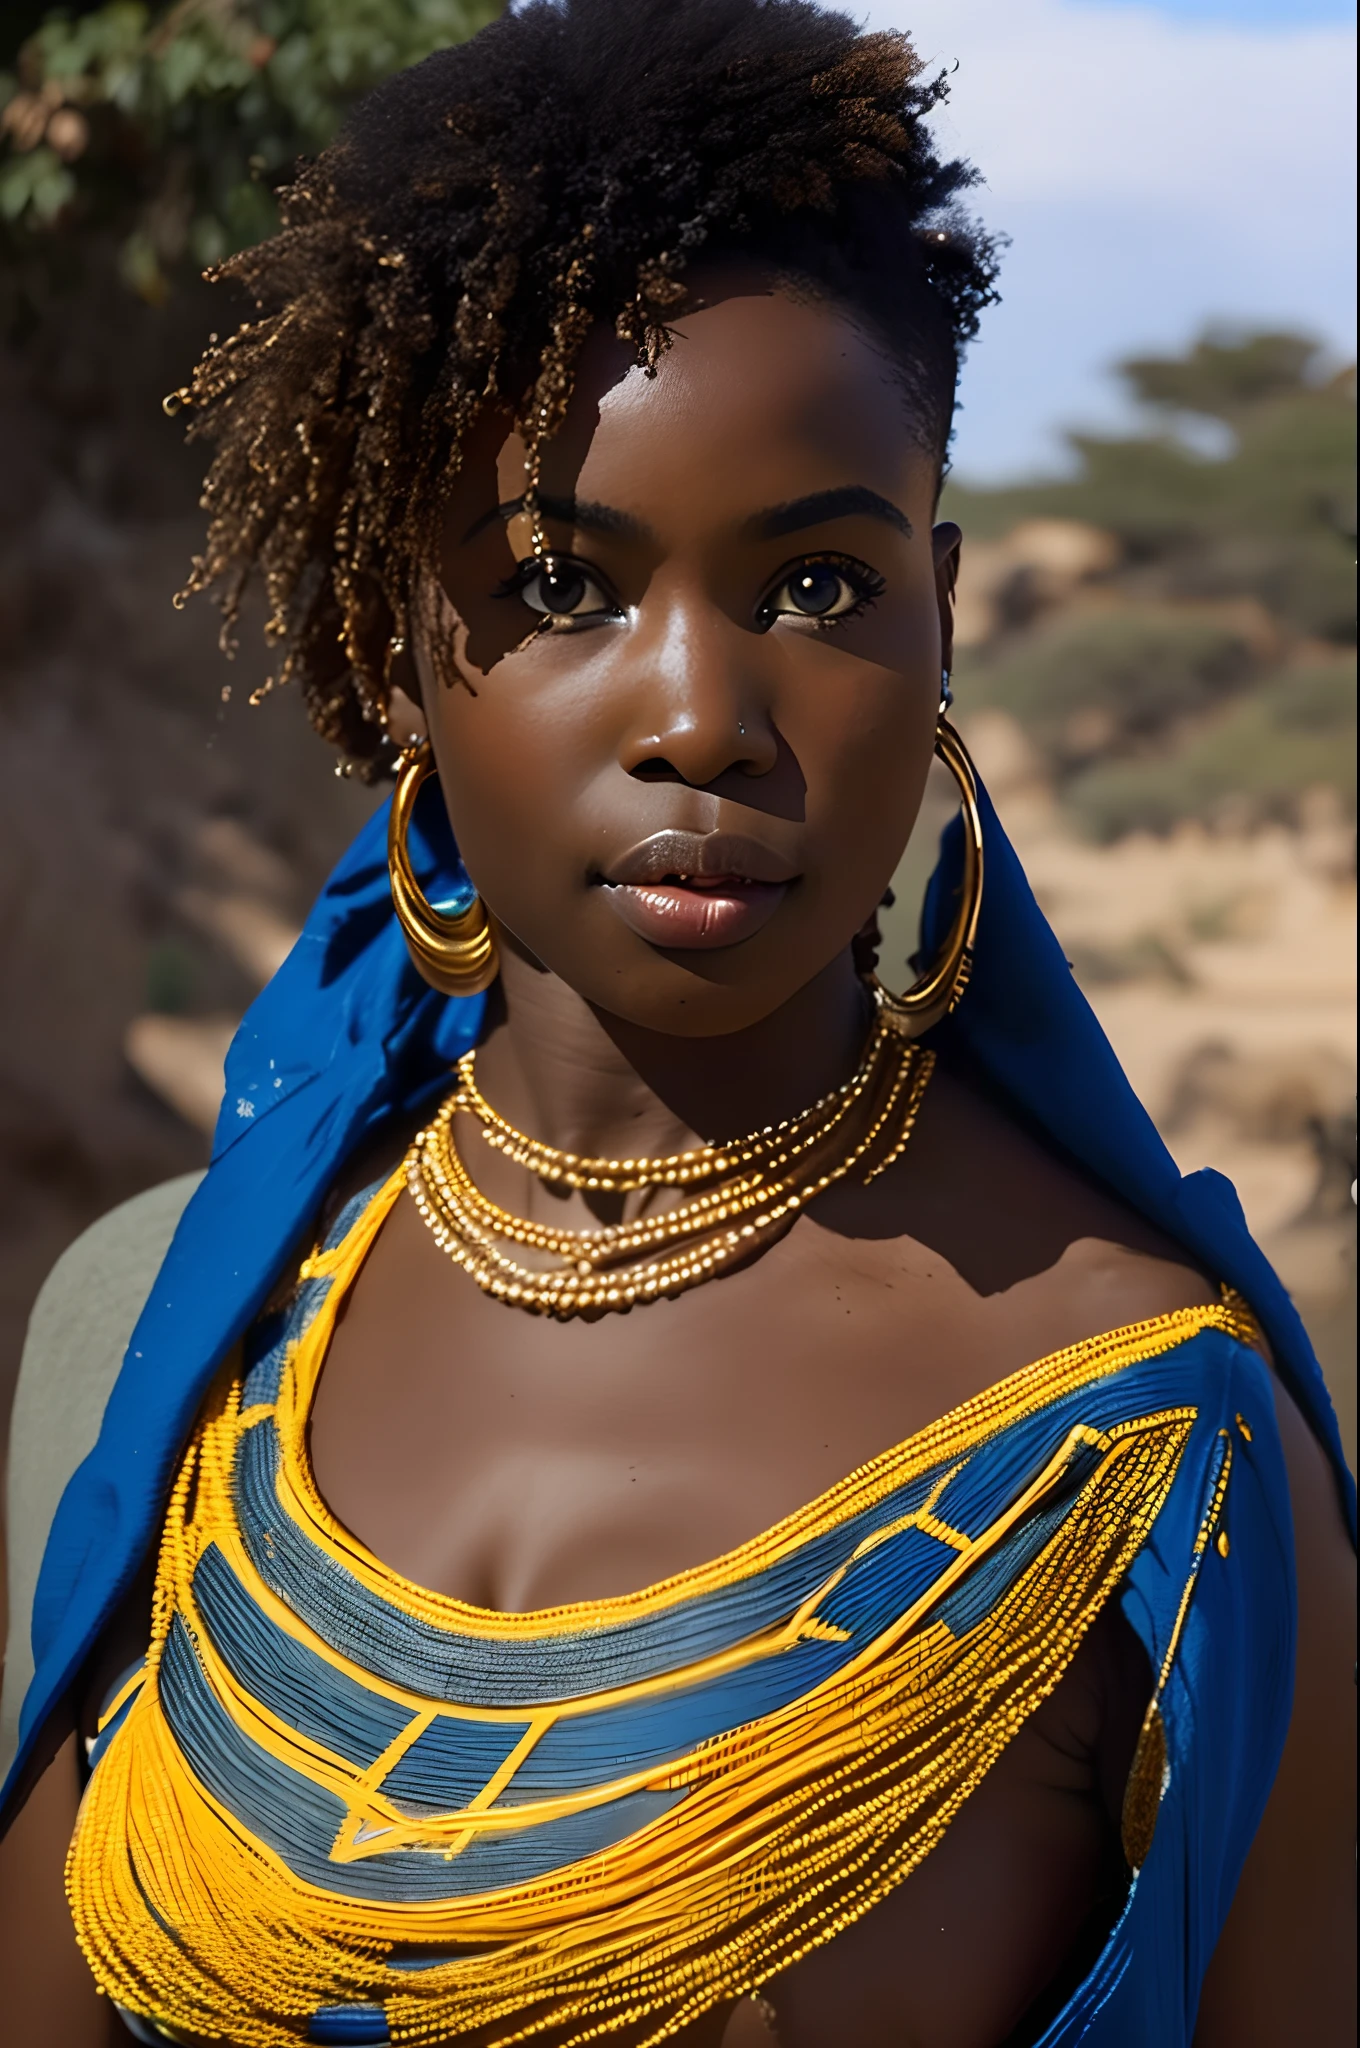 Sexy und elegante afrikanische Frau, helle Haut, großzügige Kurven, lange blaue Augen, kraus, behaart in traditionellen afrikanischen Lendenschurz-Outfits, 4k,((8k))